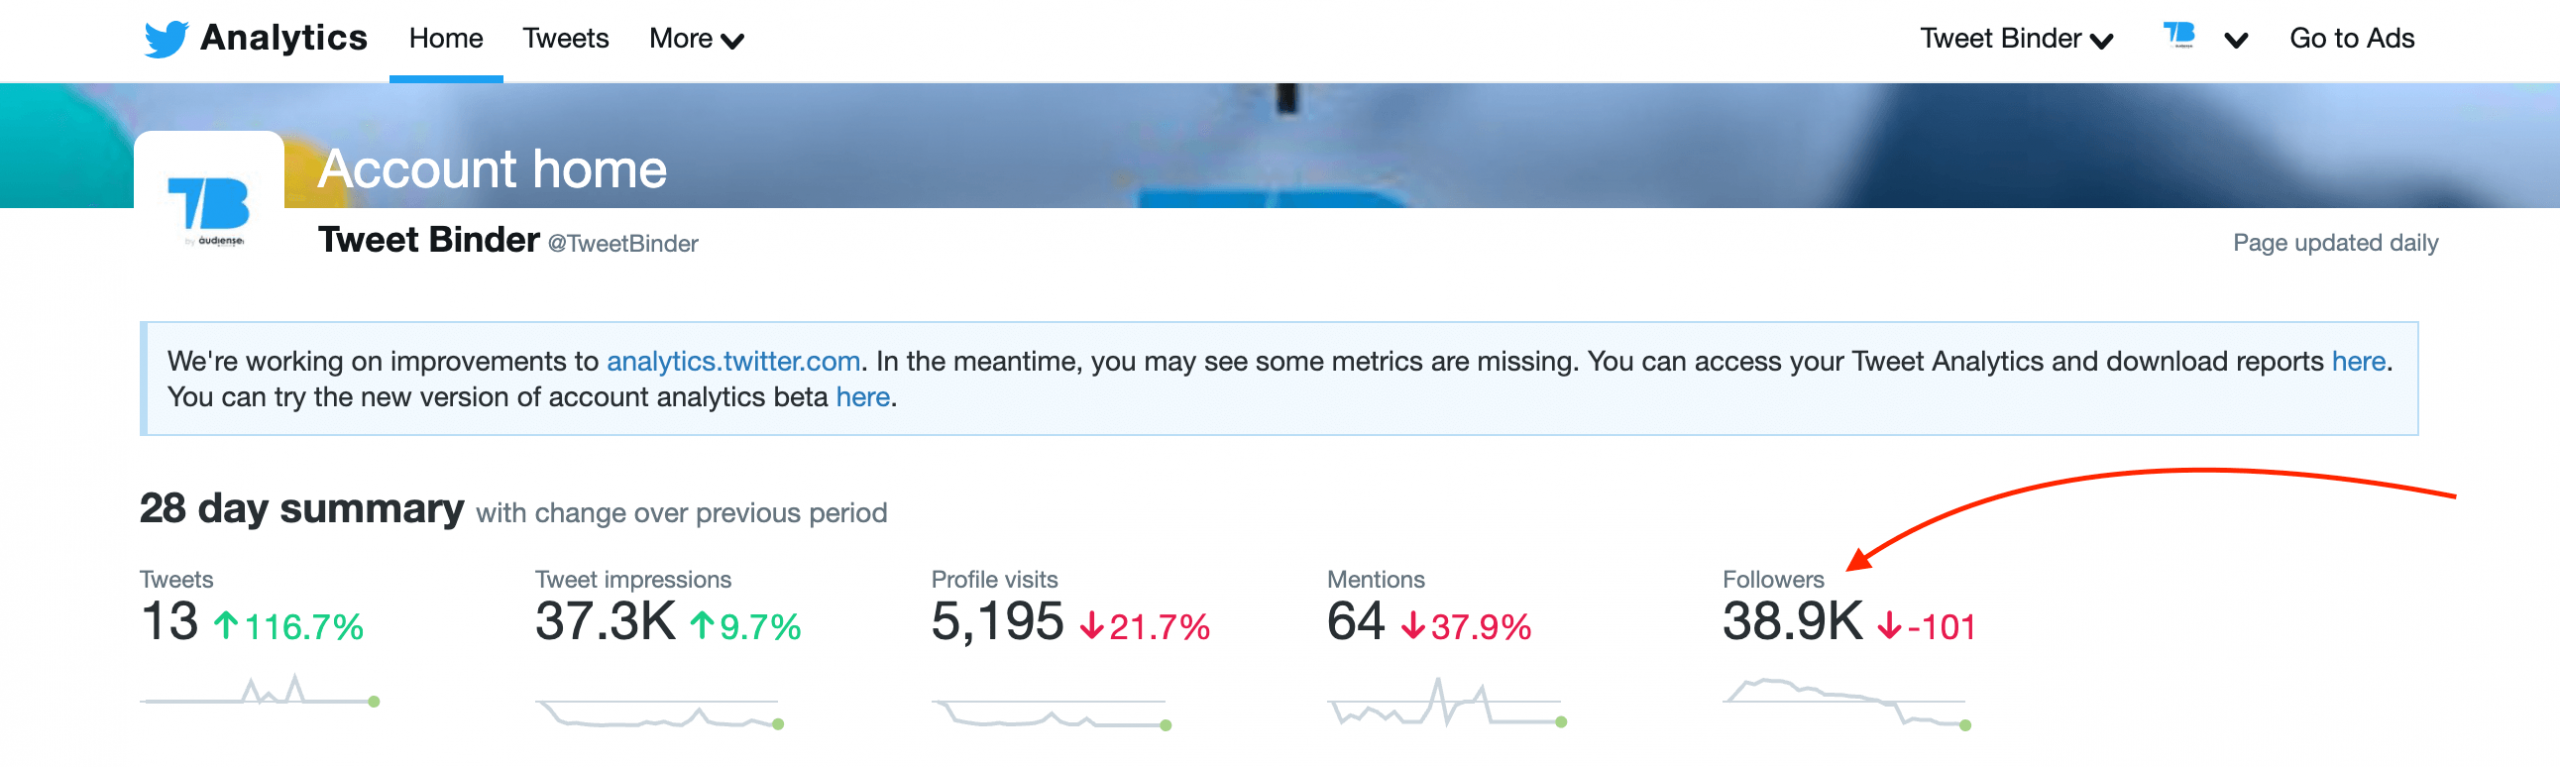 Twitter Analytics Dashboard Followers Metric